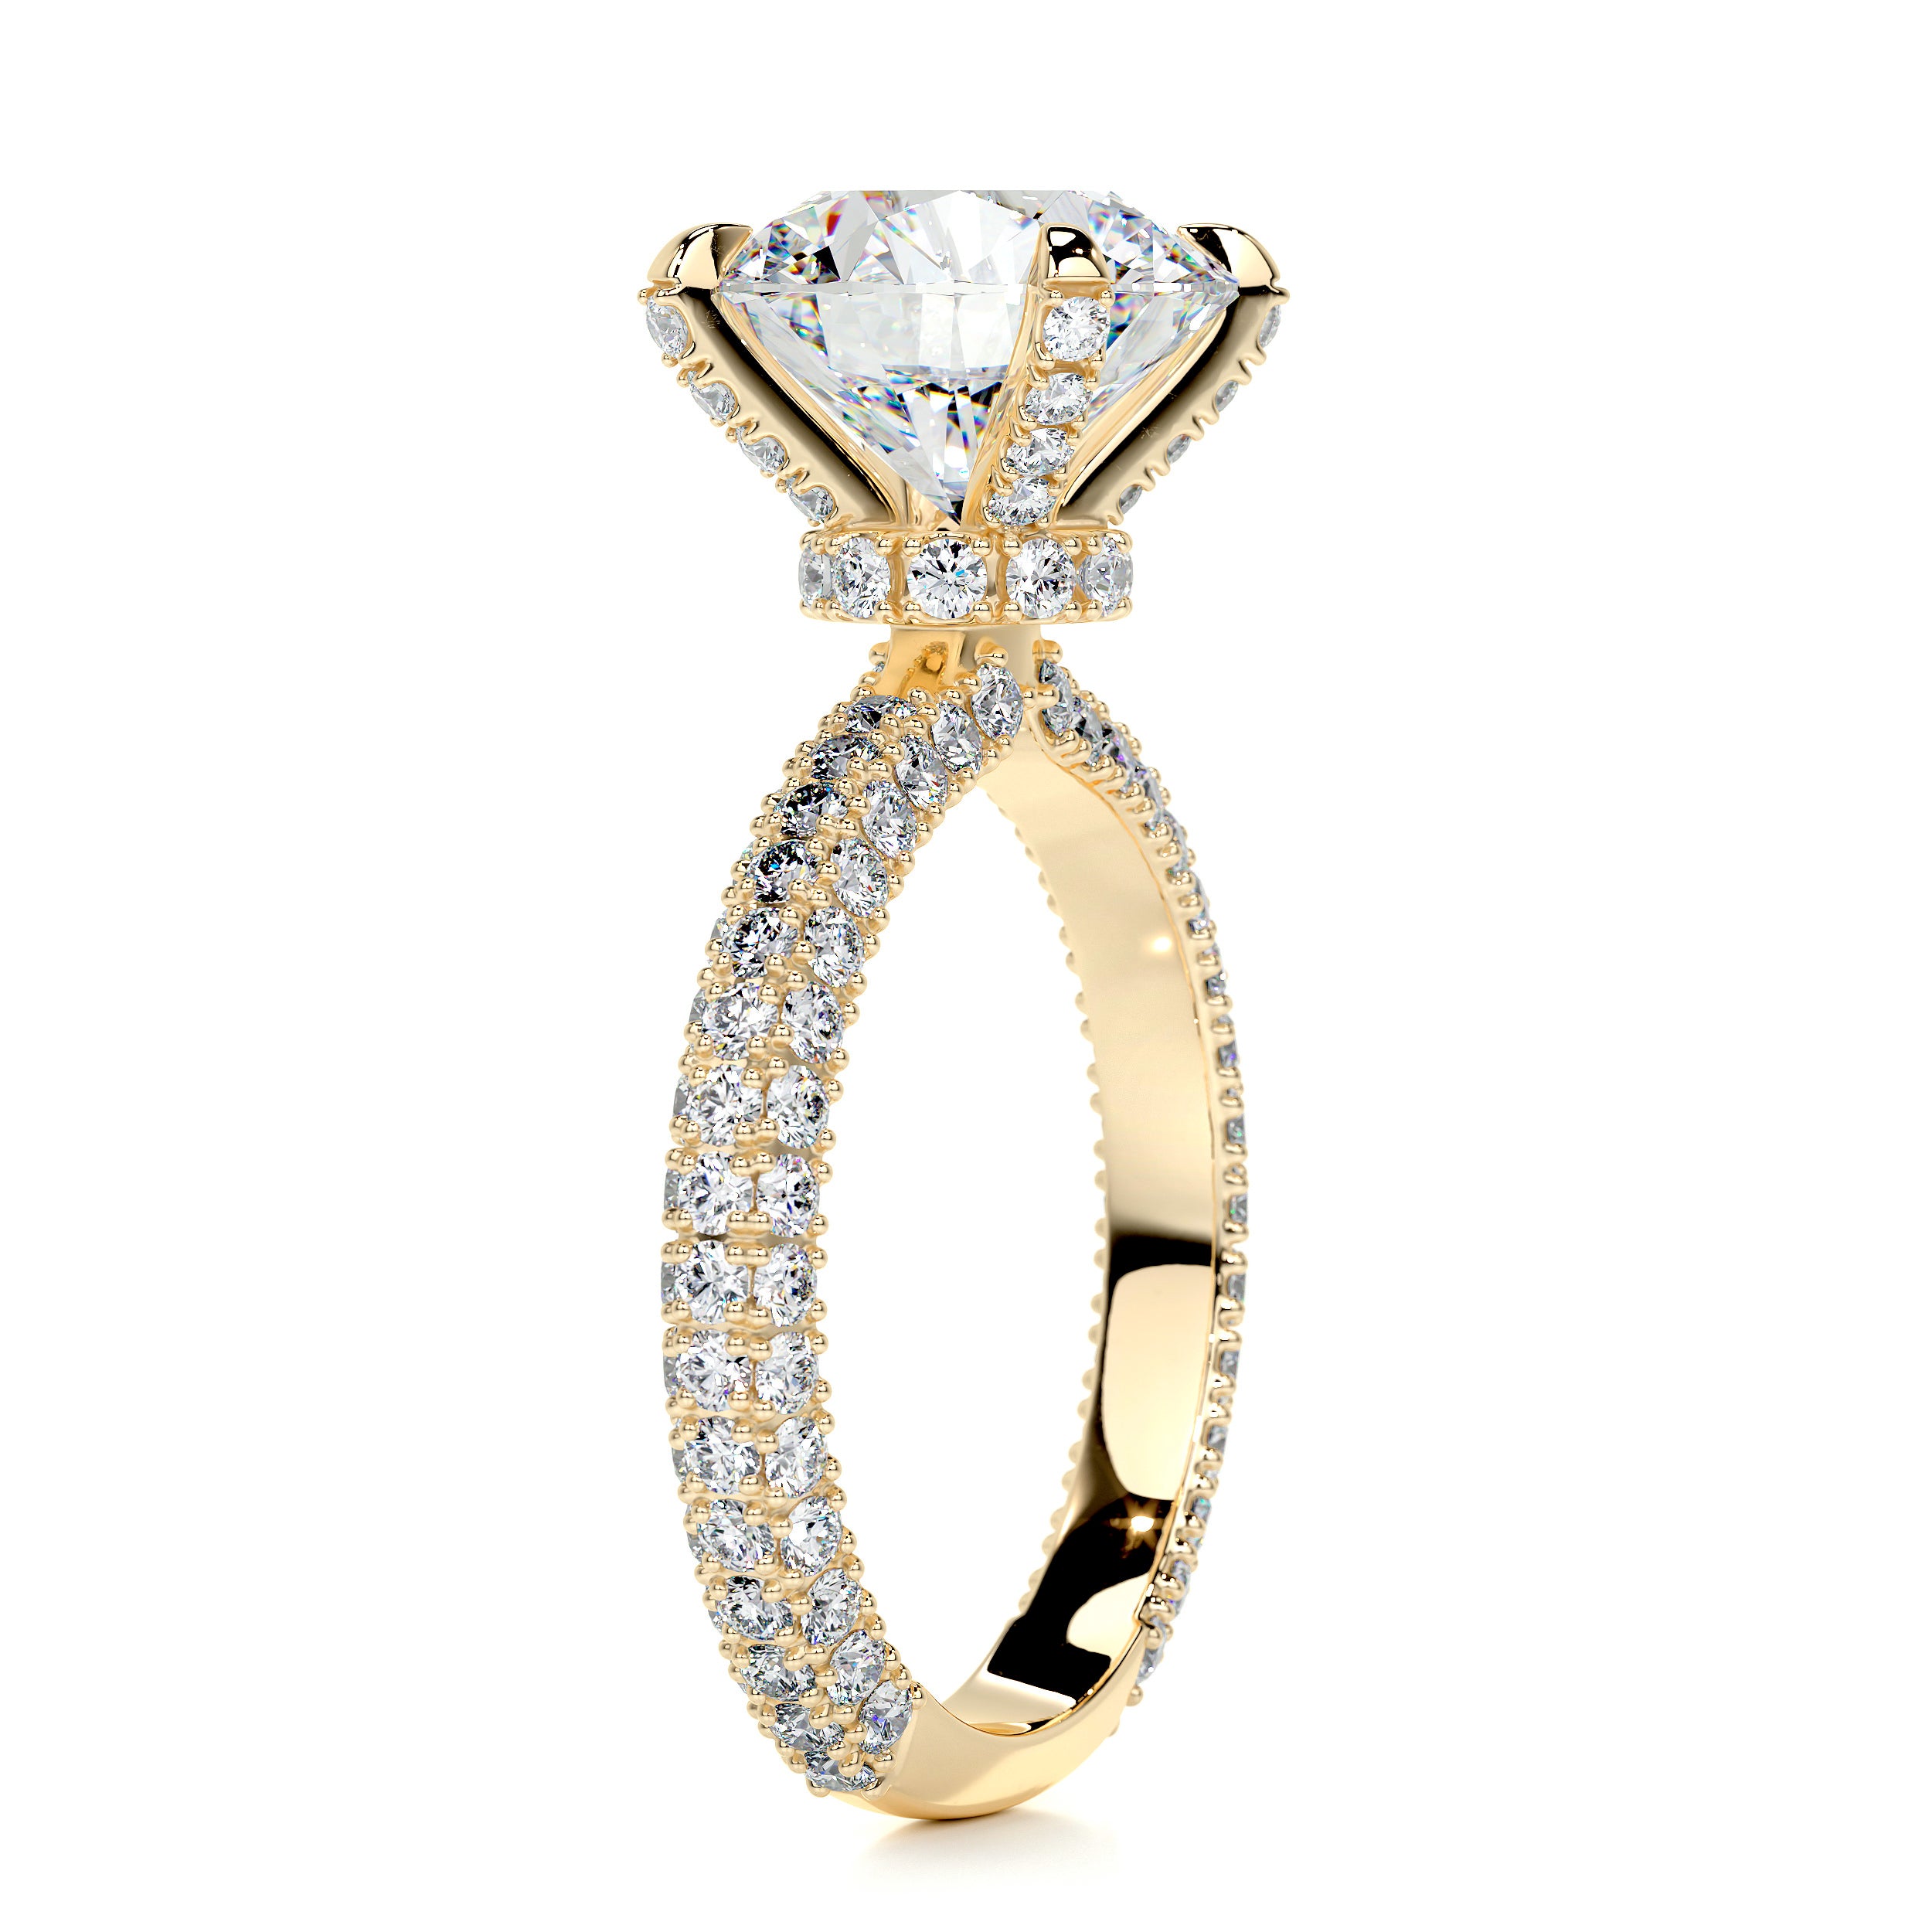 Milly Moissanite & Diamonds Ring   (4.12 Carat) -18K Yellow Gold